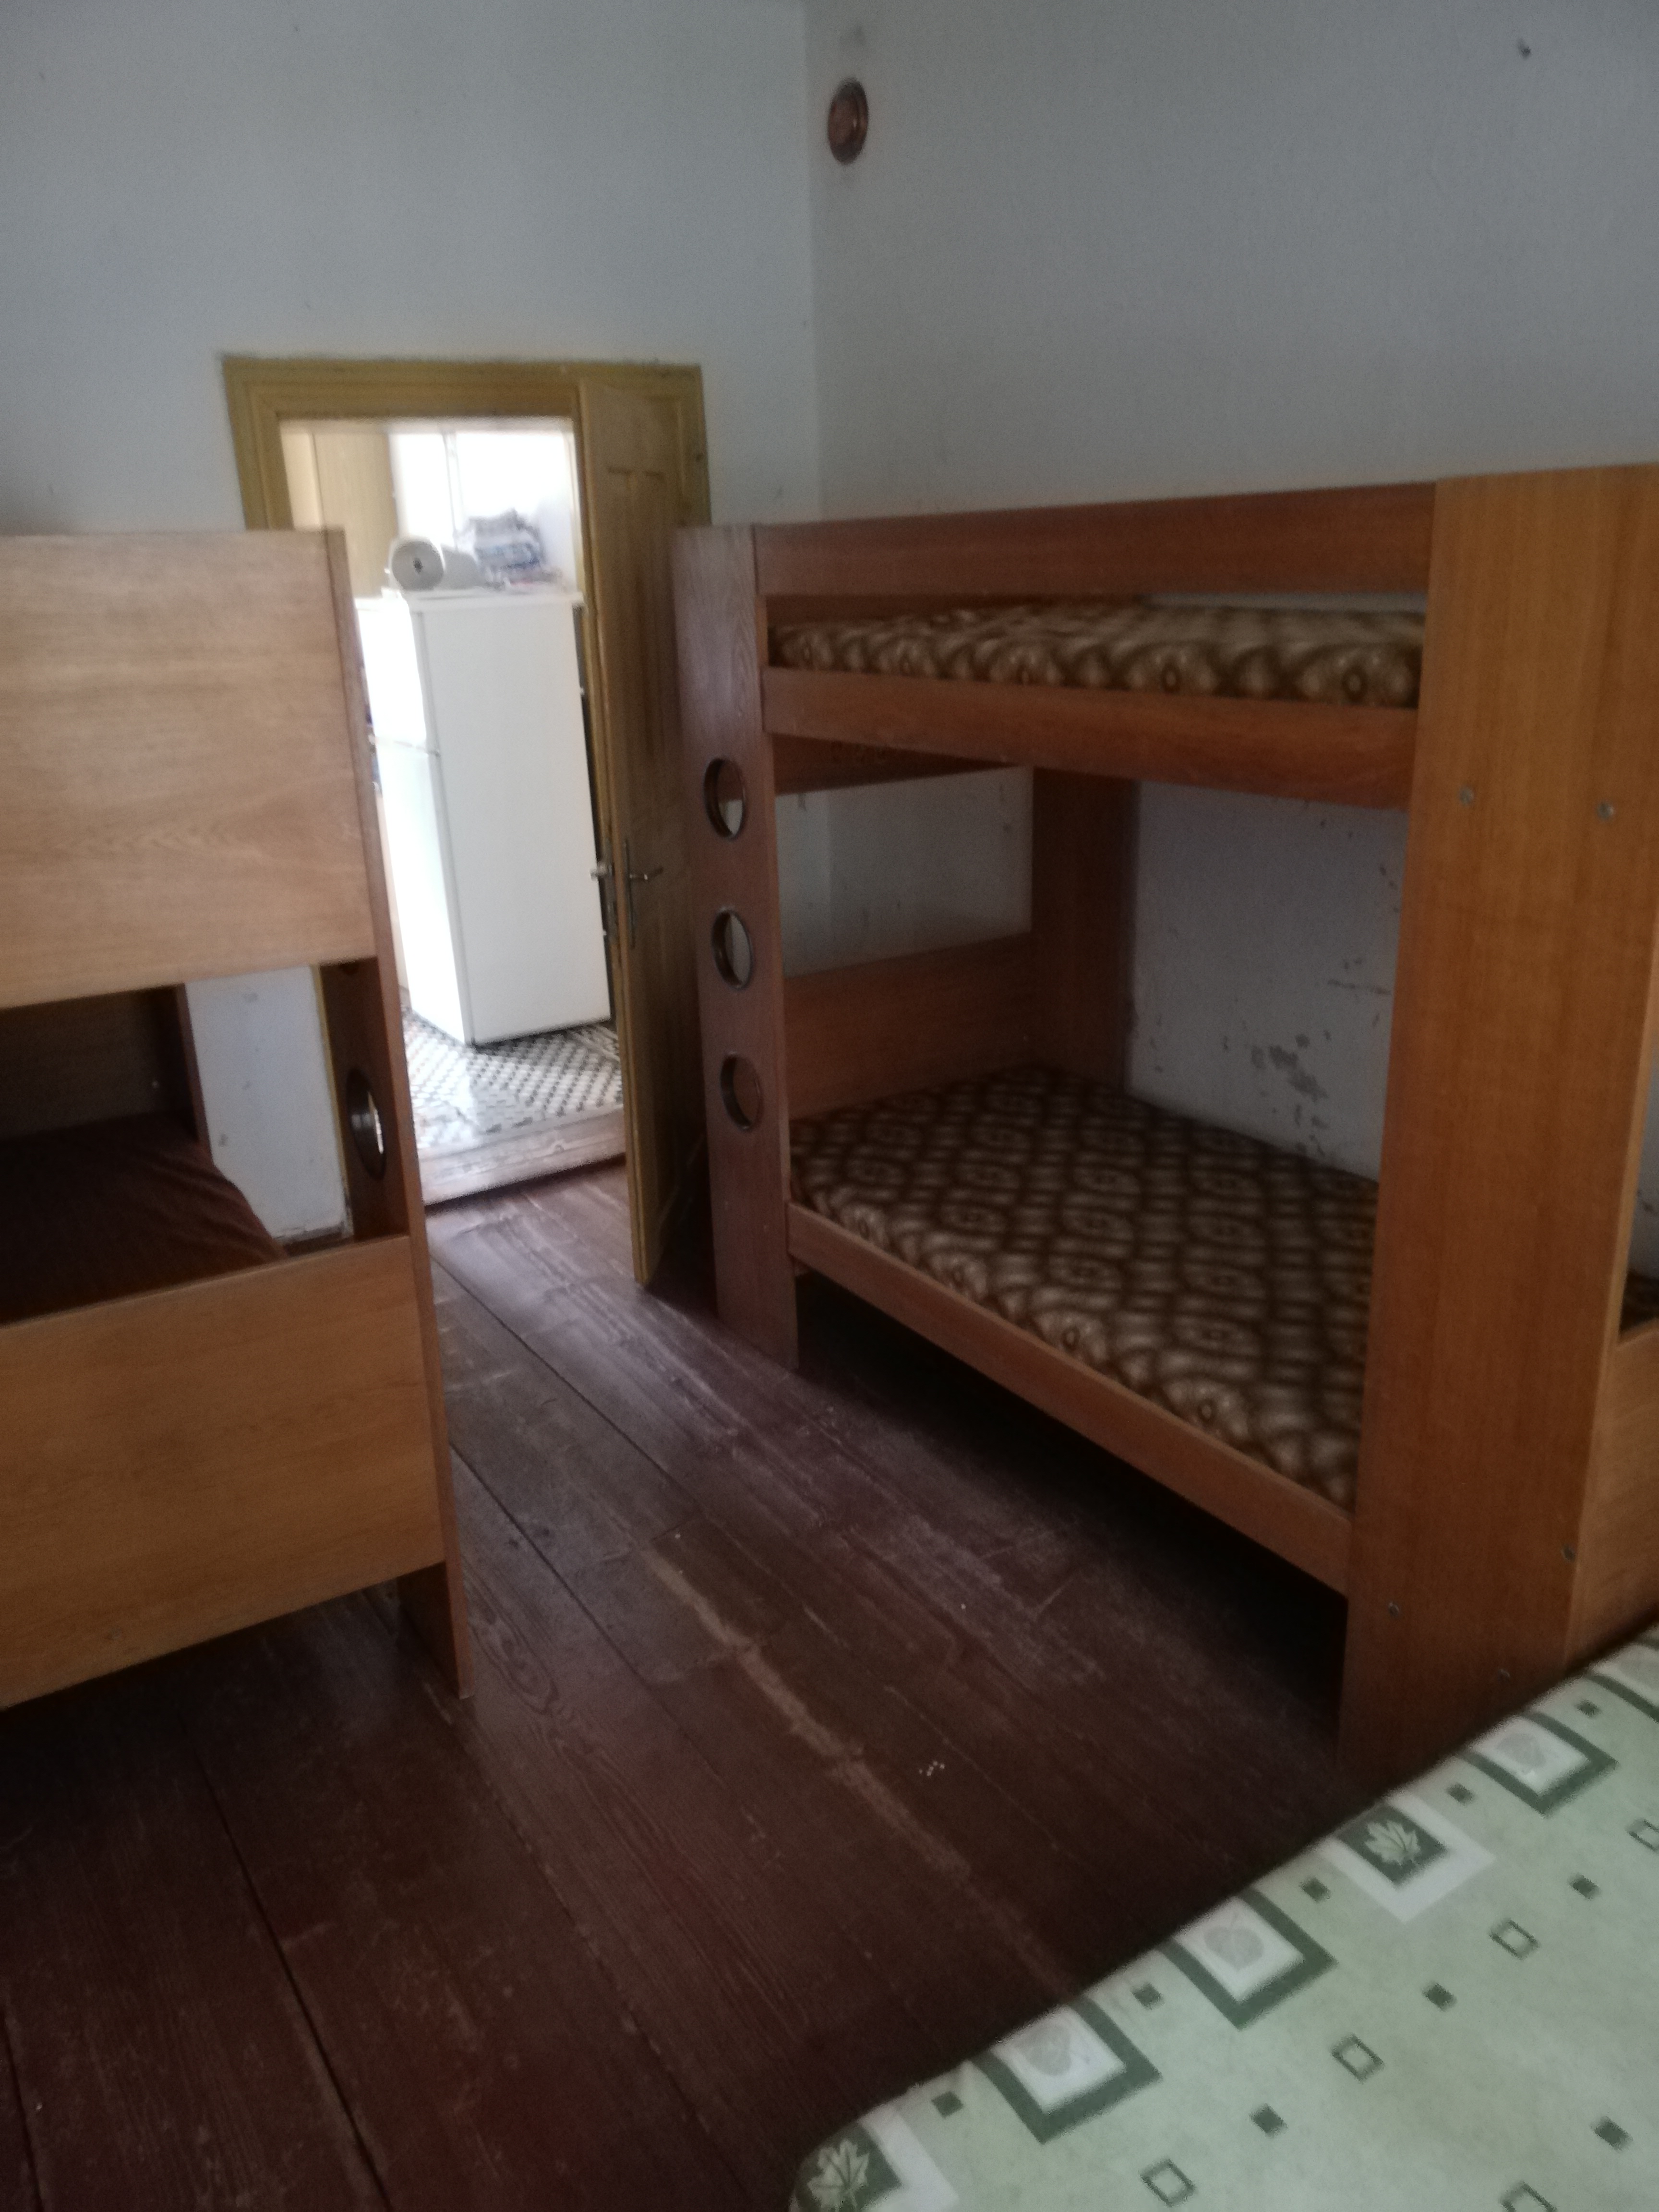 Ostrov u Macochy, Fara Ostrov u Macochy - přízemí-vedle kuchyně-2 patrové postele +jedna postel